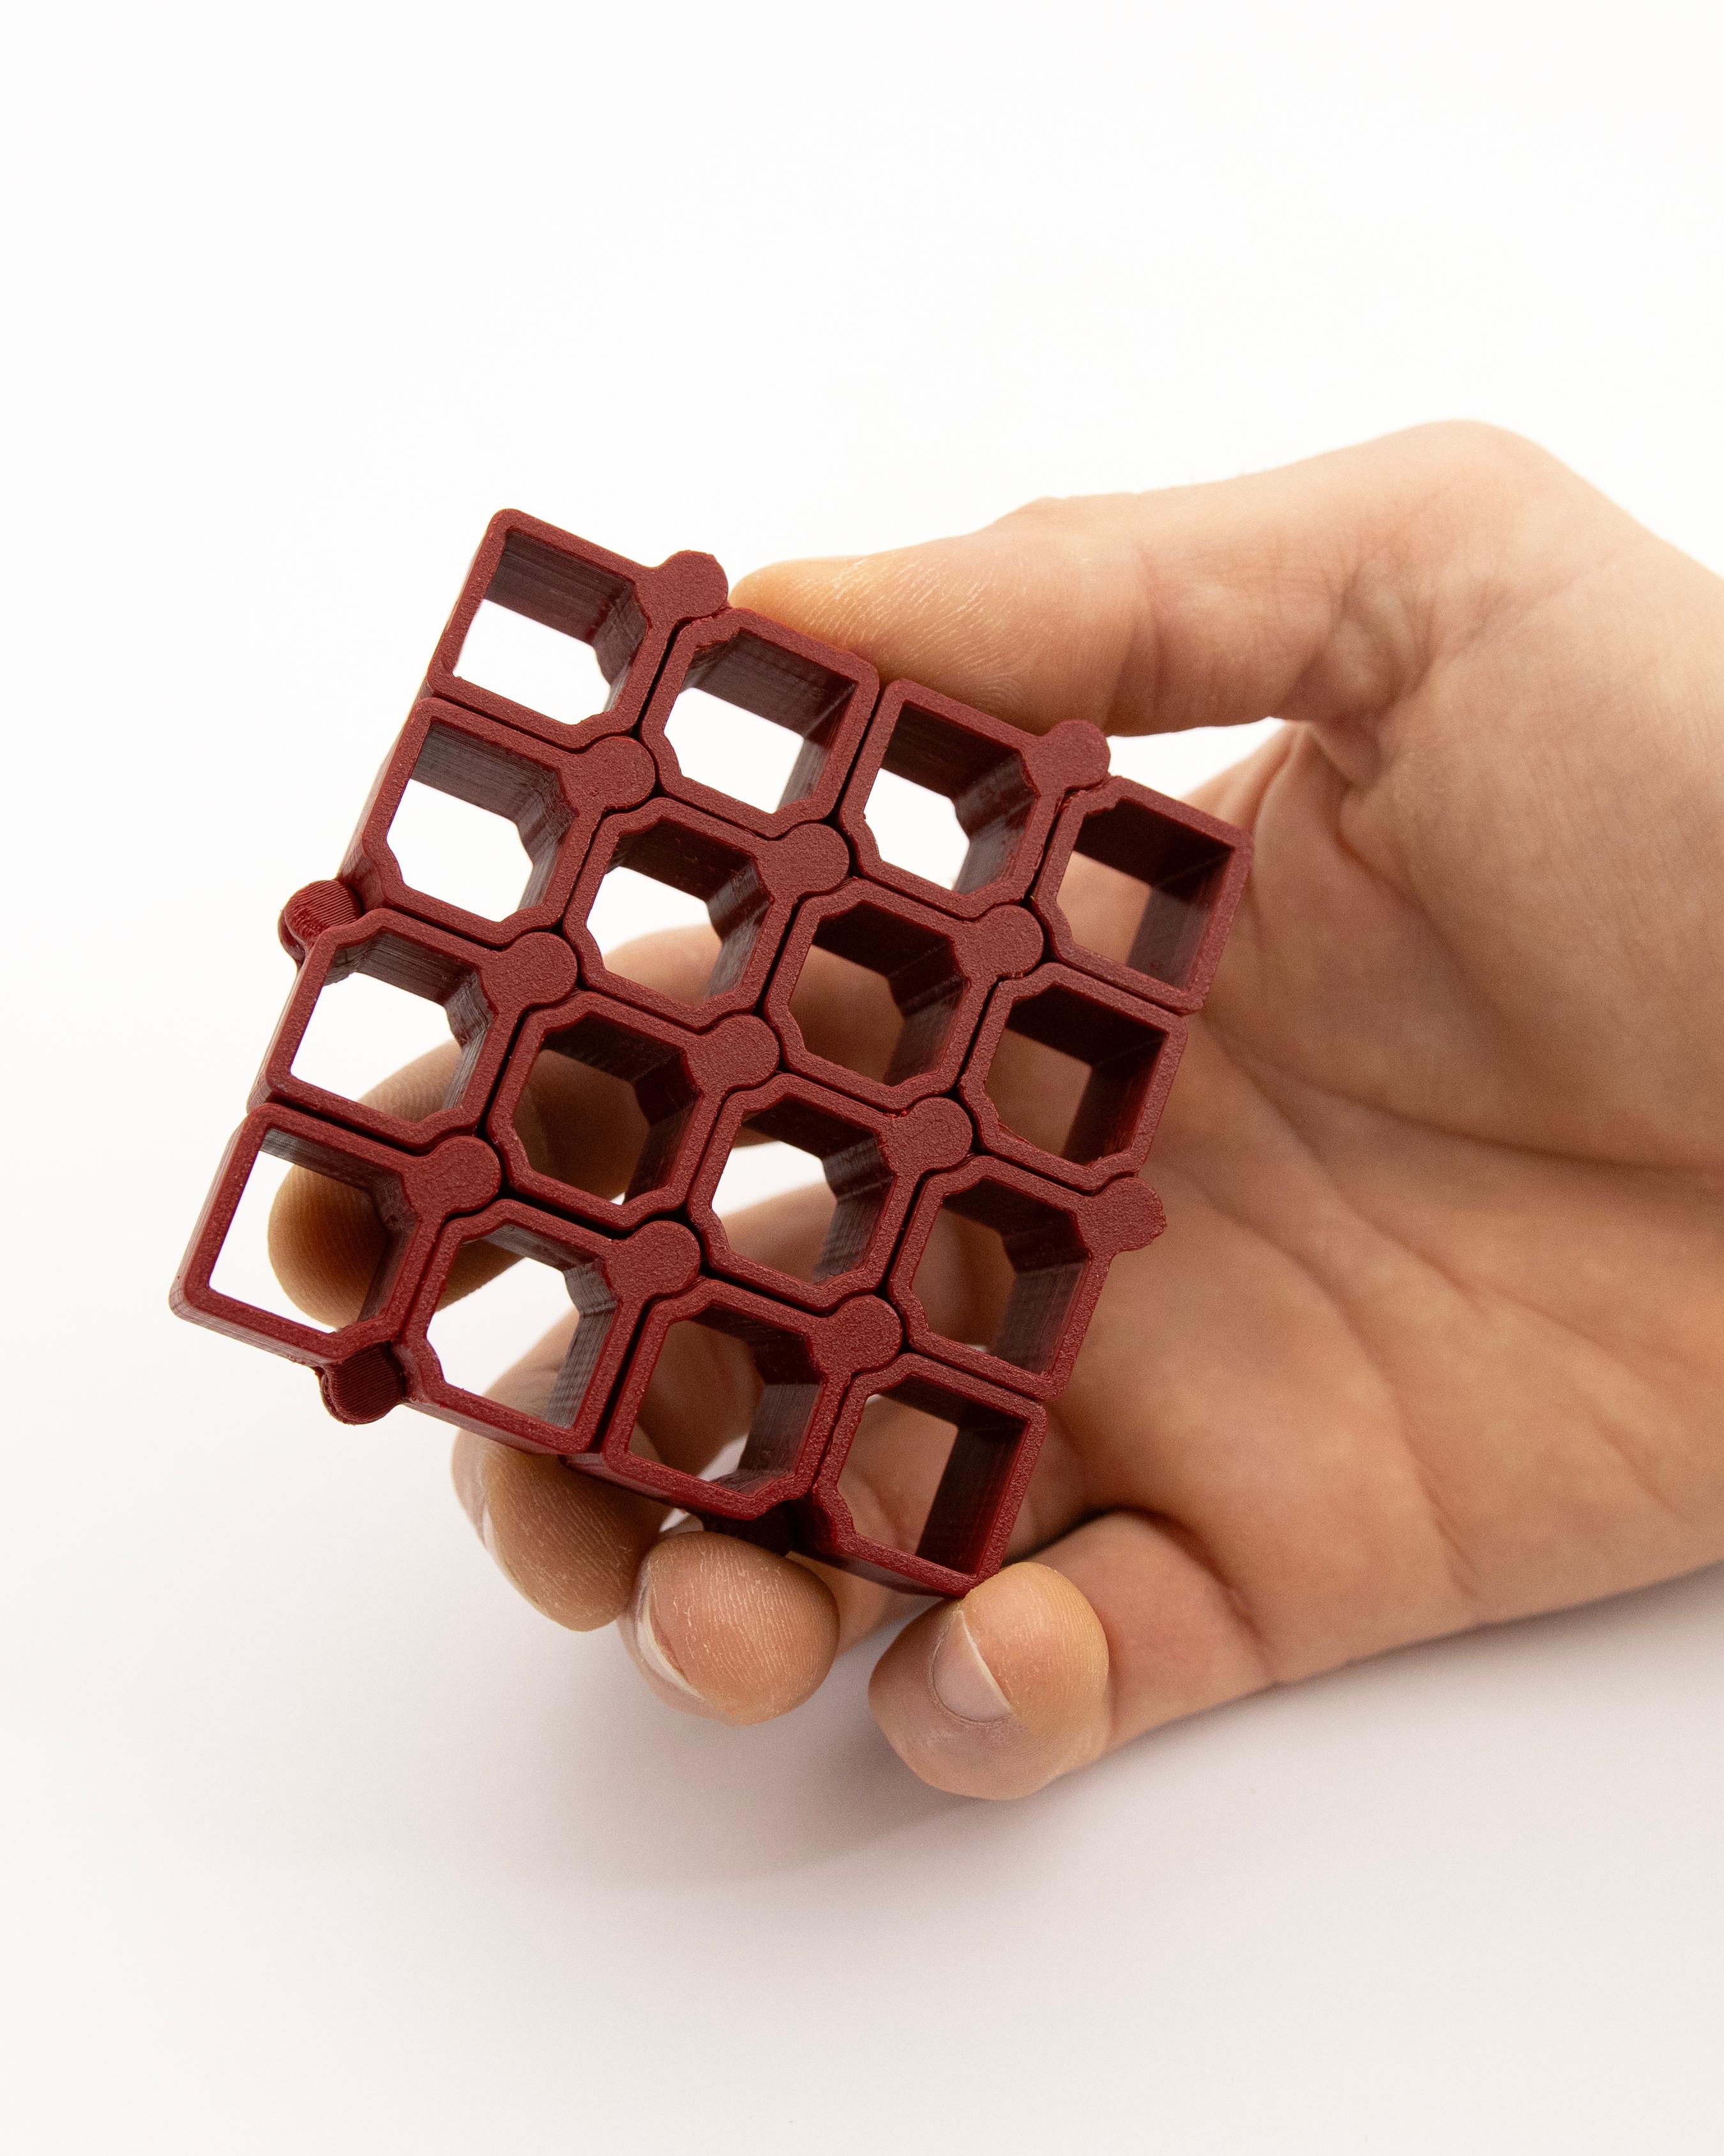 Auxetic Cubes // 18mm 4x4 3d model